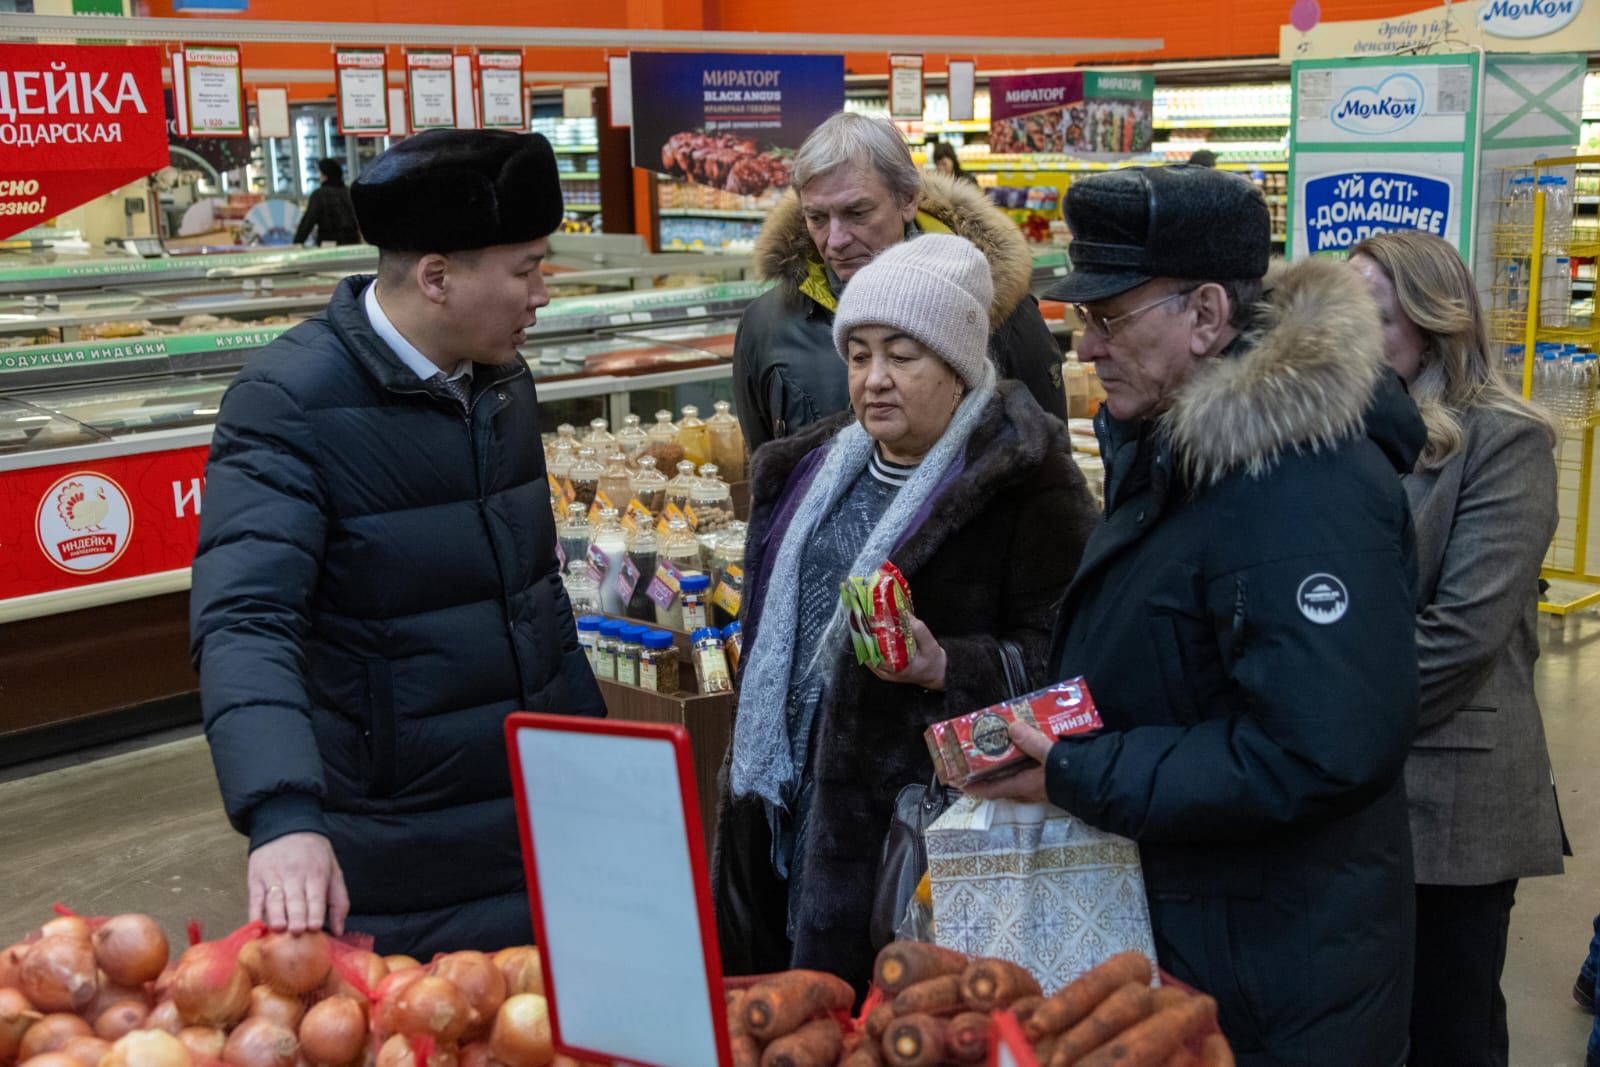 Проведен мониторинг цен на социально значимую продукцию в магазинах города Павлодара